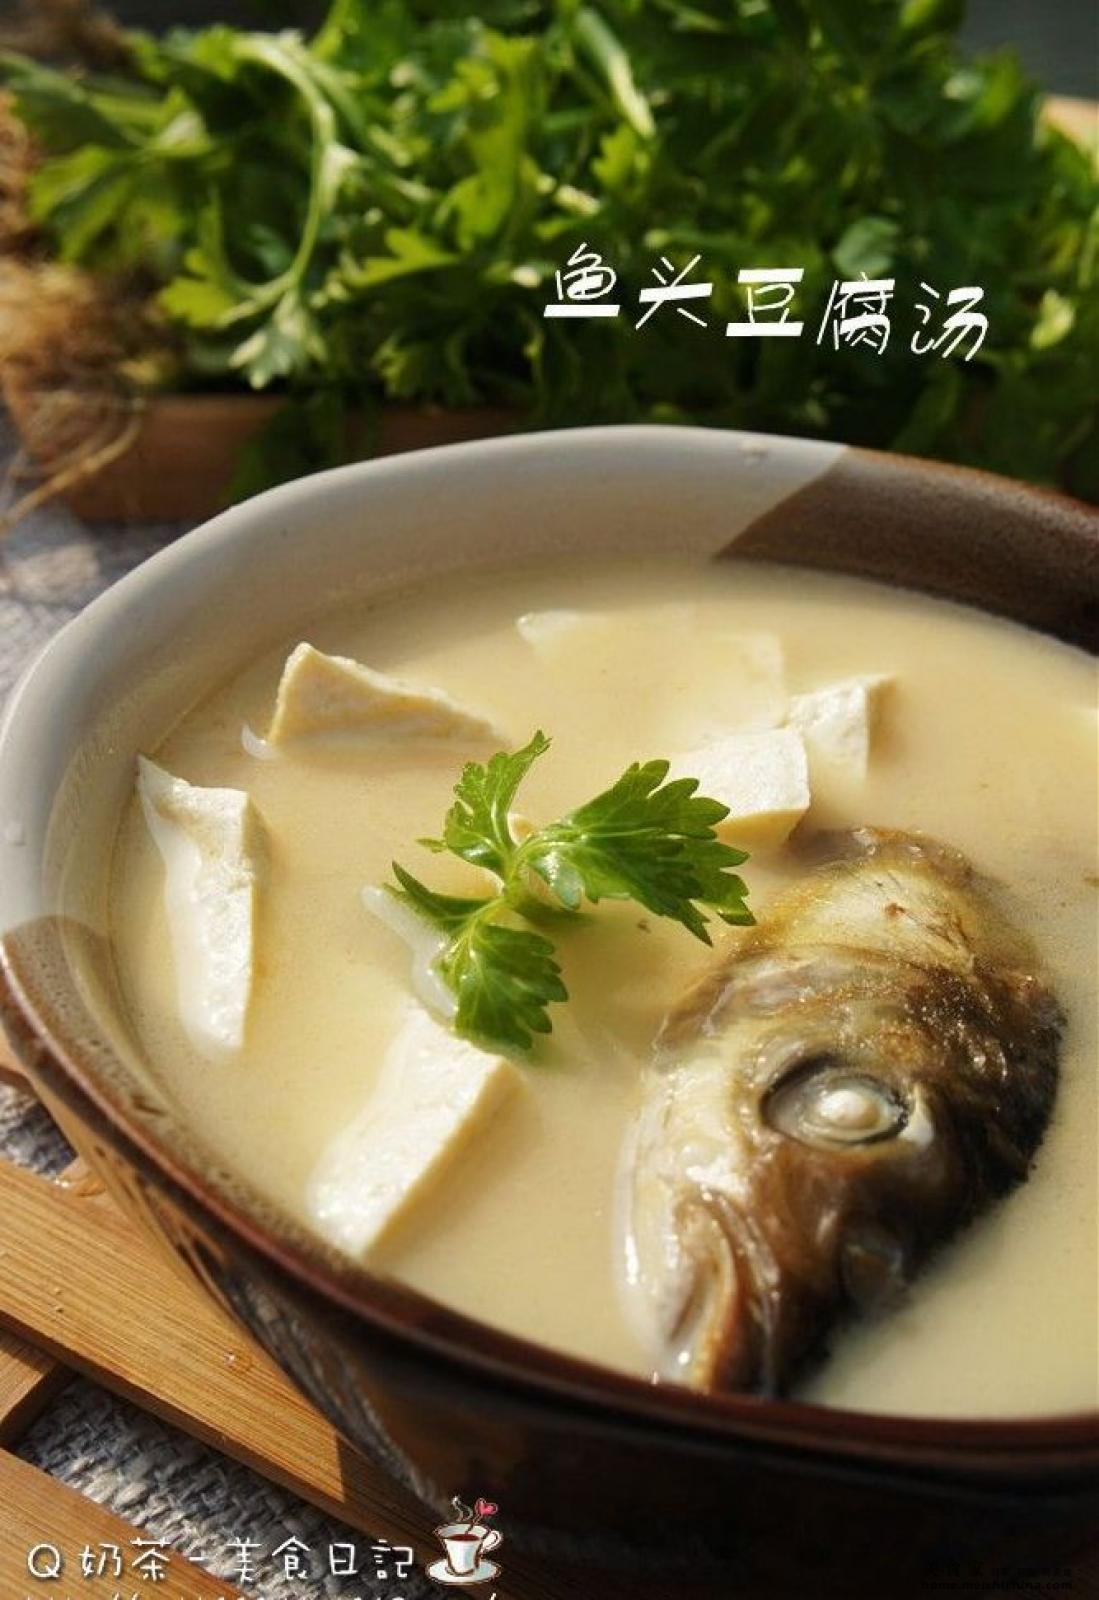 鱼头豆腐汤的做法_【图解】鱼头豆腐汤怎么做如何做好吃_鱼头豆腐汤家常做法大全_米果幺幺_豆果美食